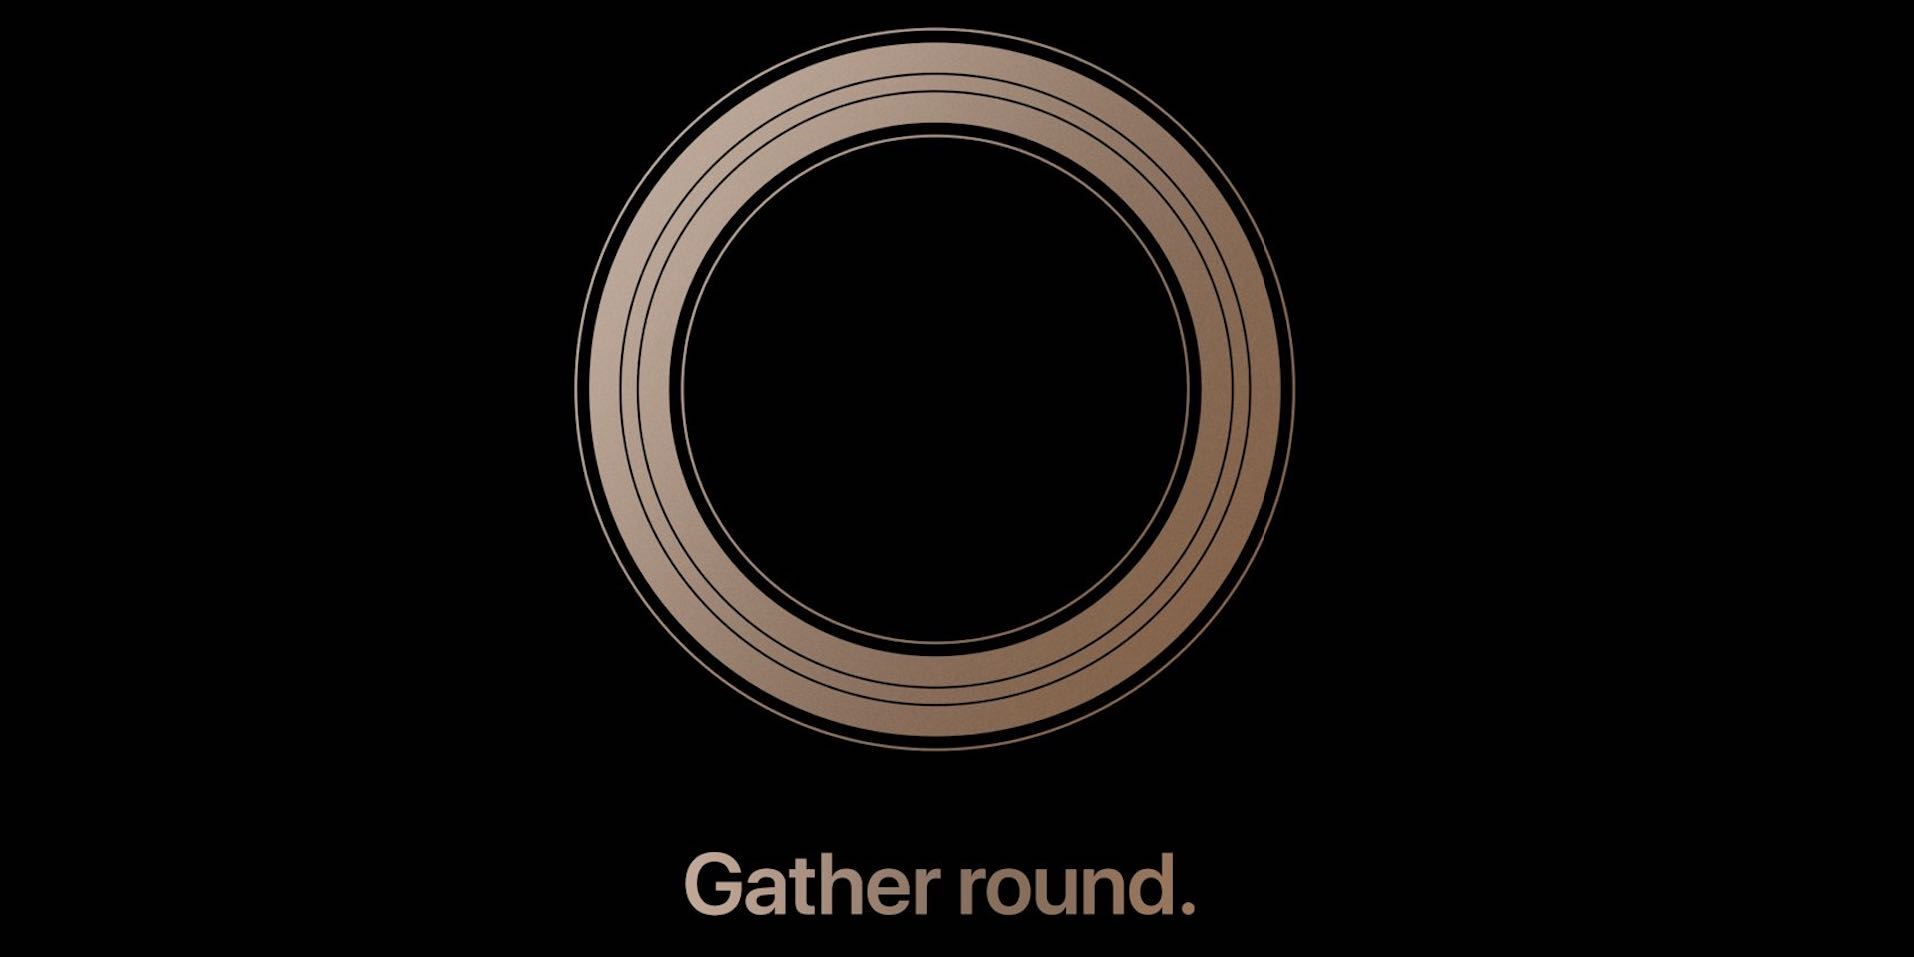 Apple skal vise frem nye iPhone 12. september